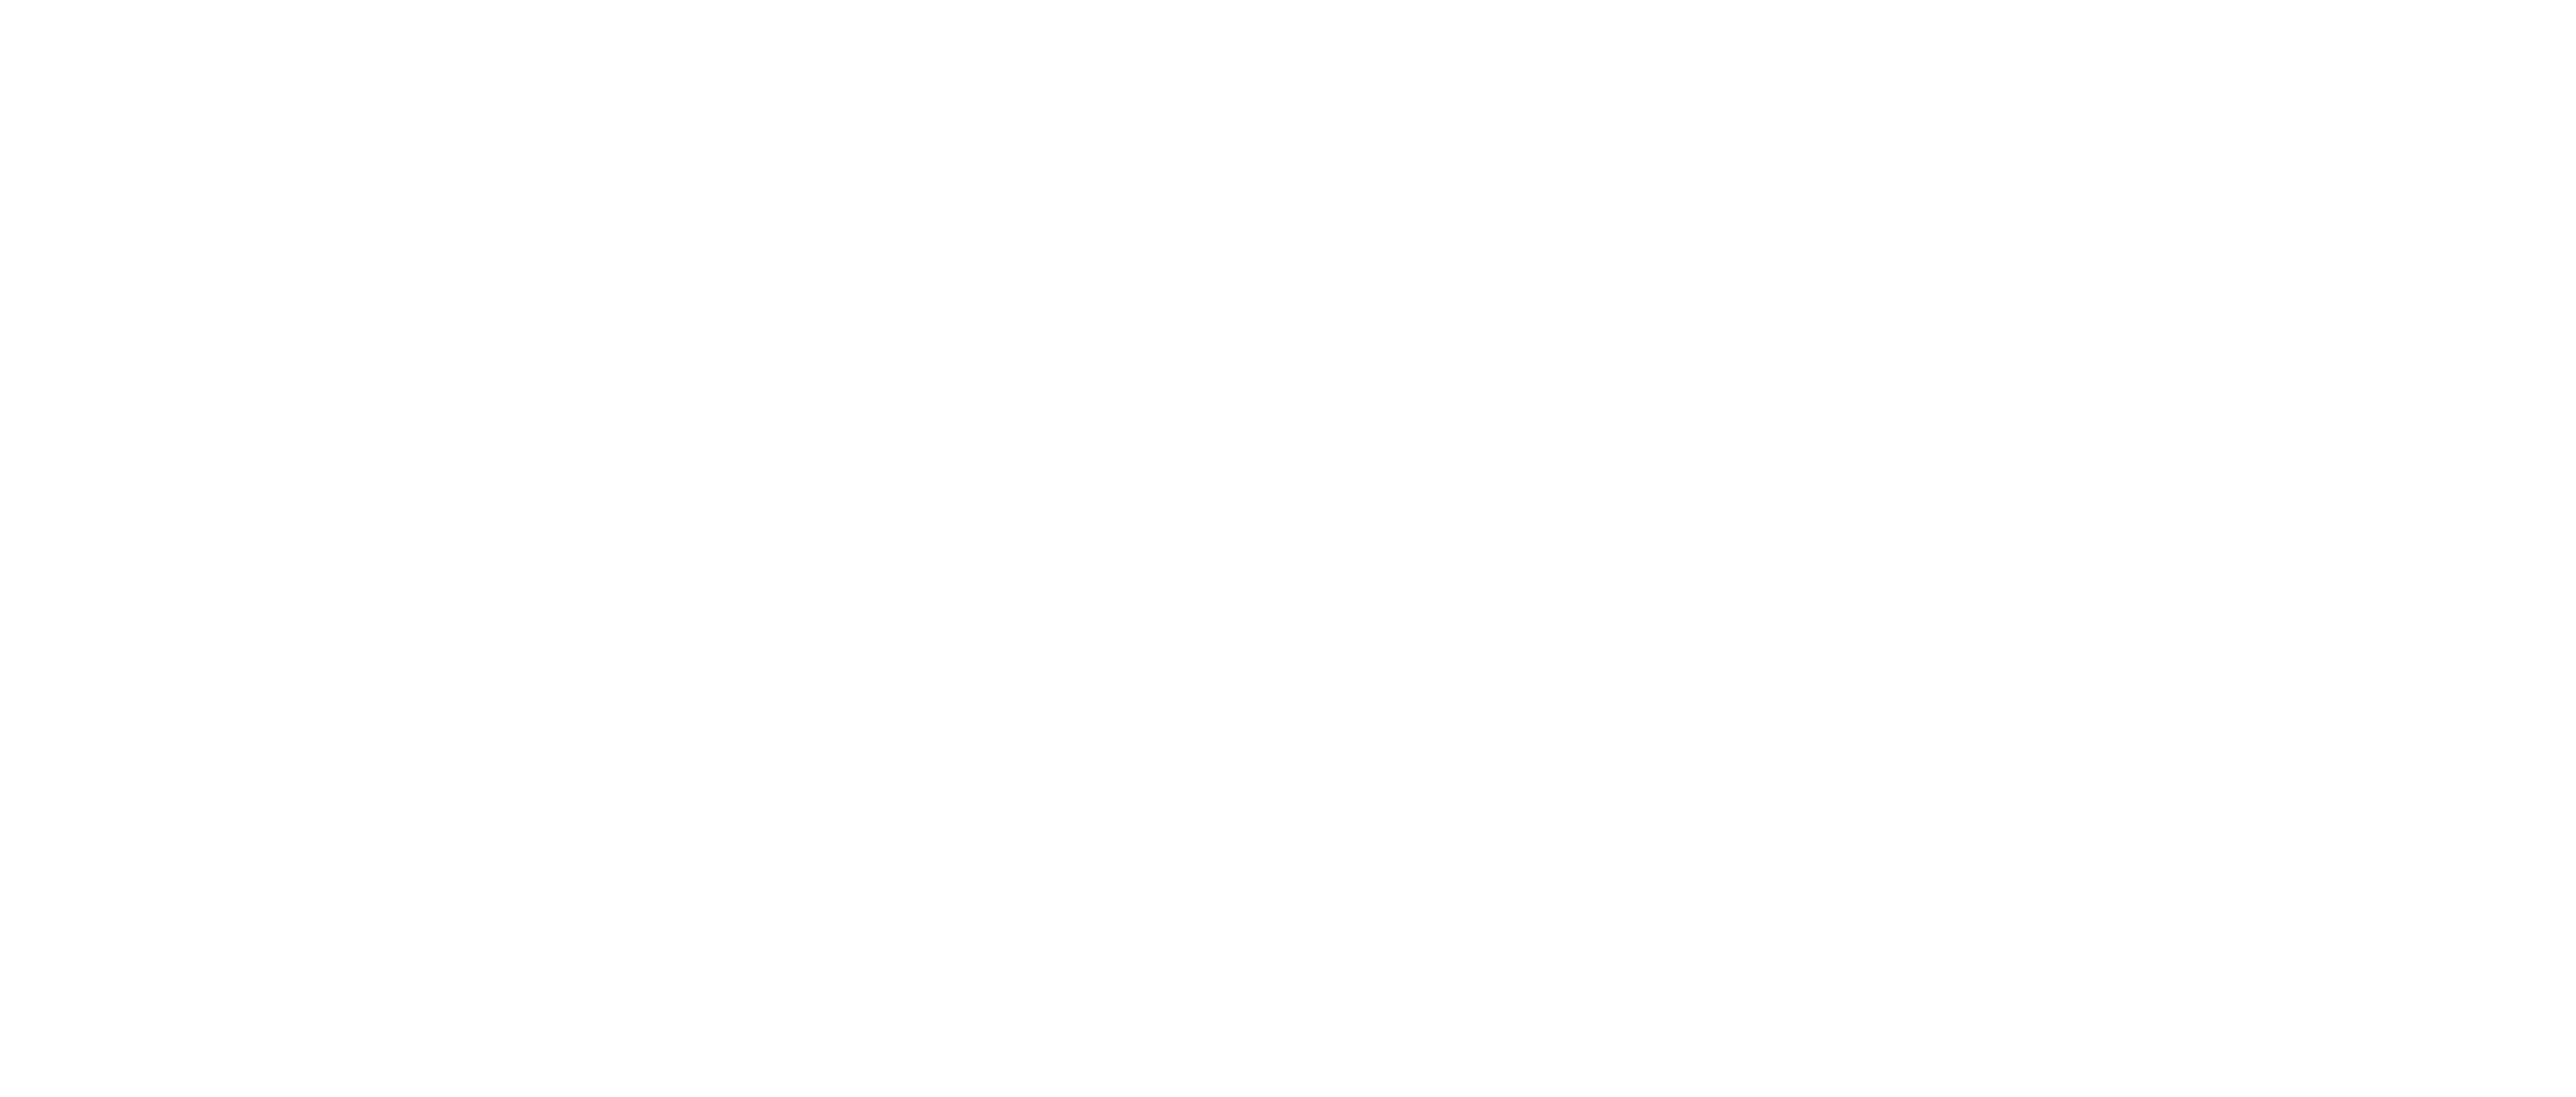 Archivio Fondazione Fiera Milano